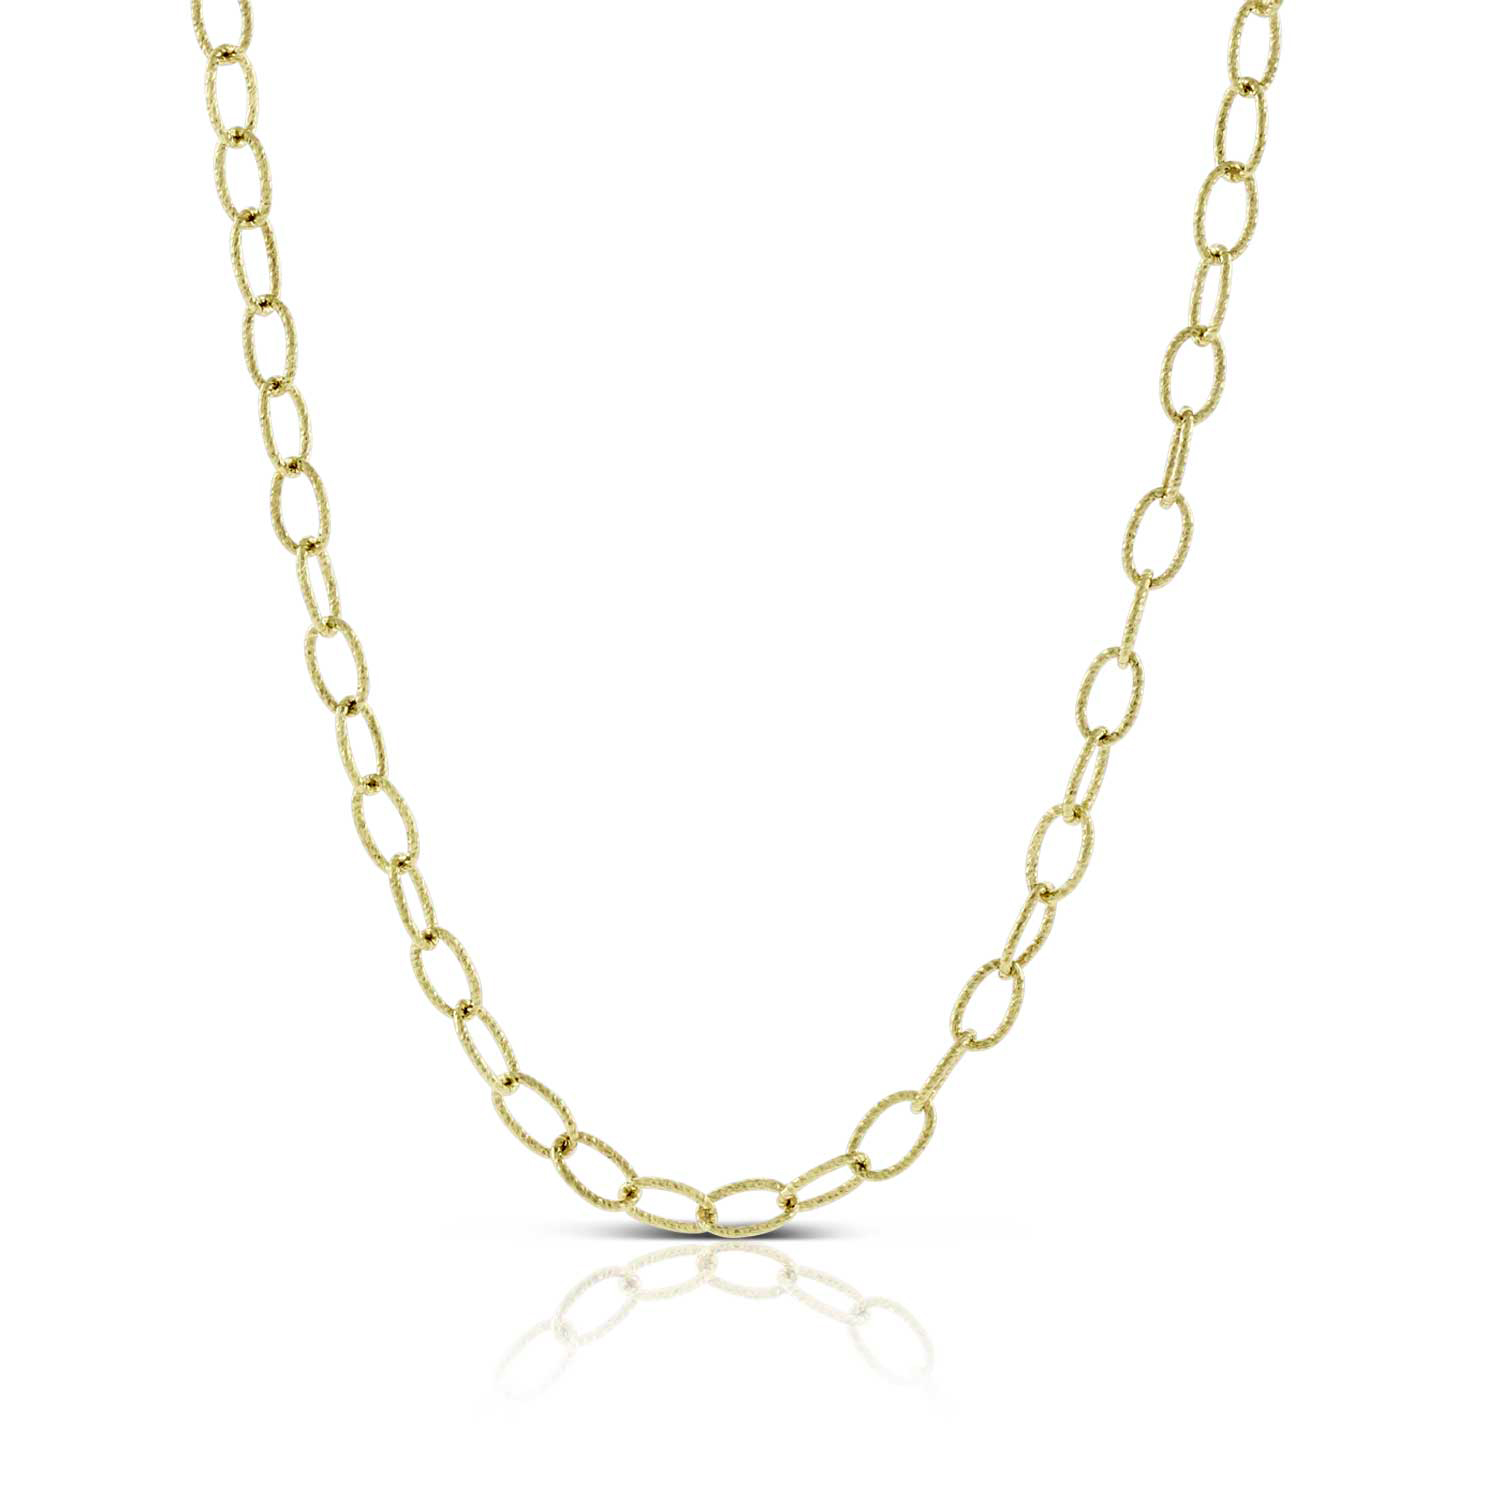 Toscano Oval Link Chain Necklace 14K, 32" | Ben Bridge Jeweler